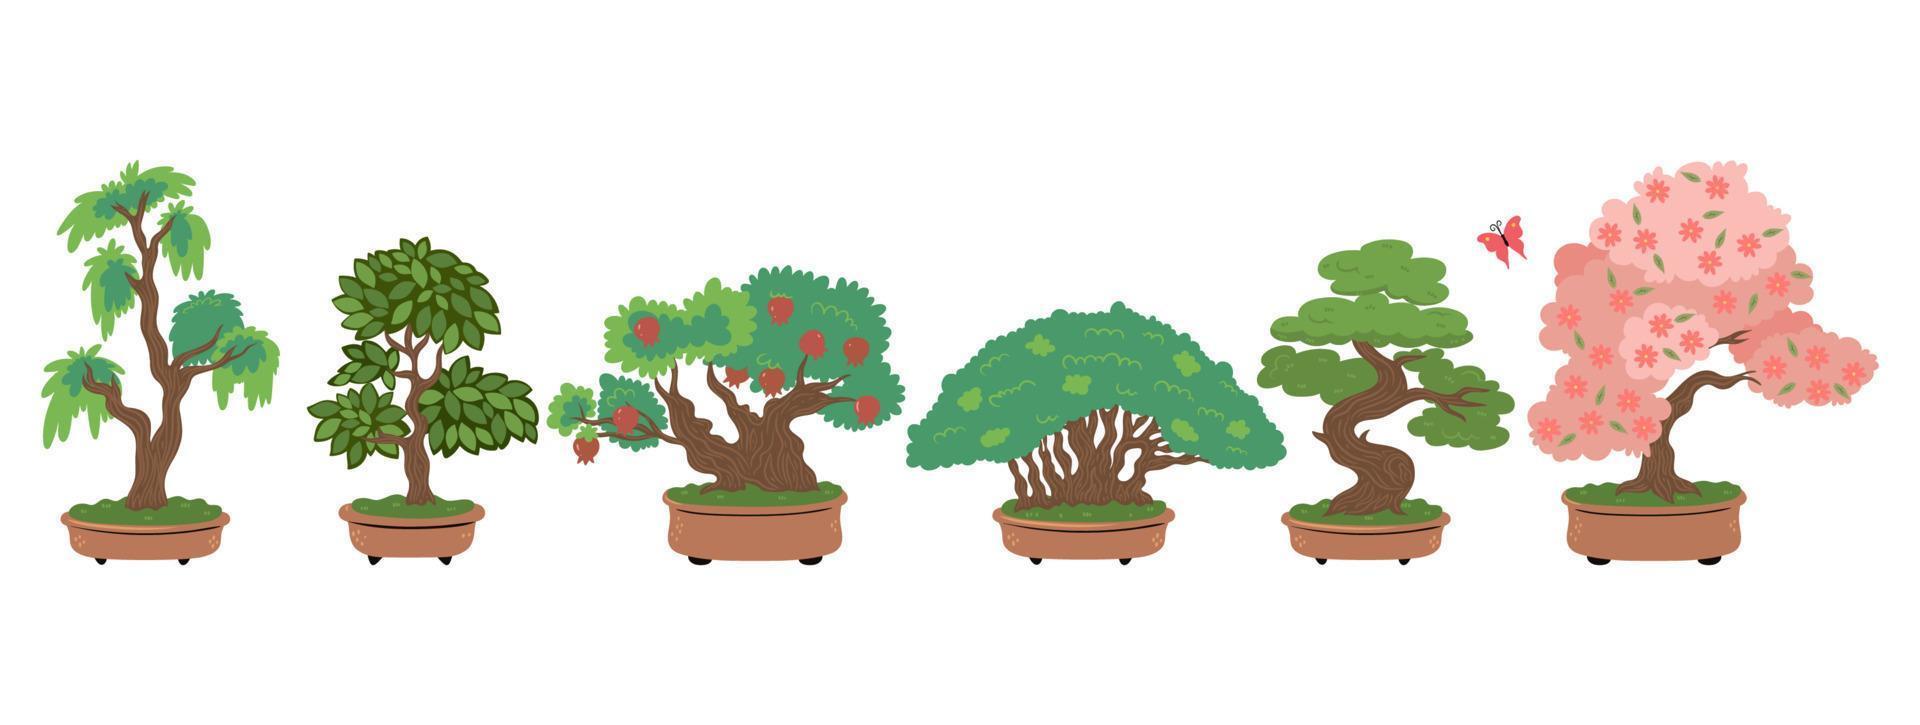 Bonsai-Bäume isoliert auf weißem Hintergrund. Vektorgrafiken. vektor